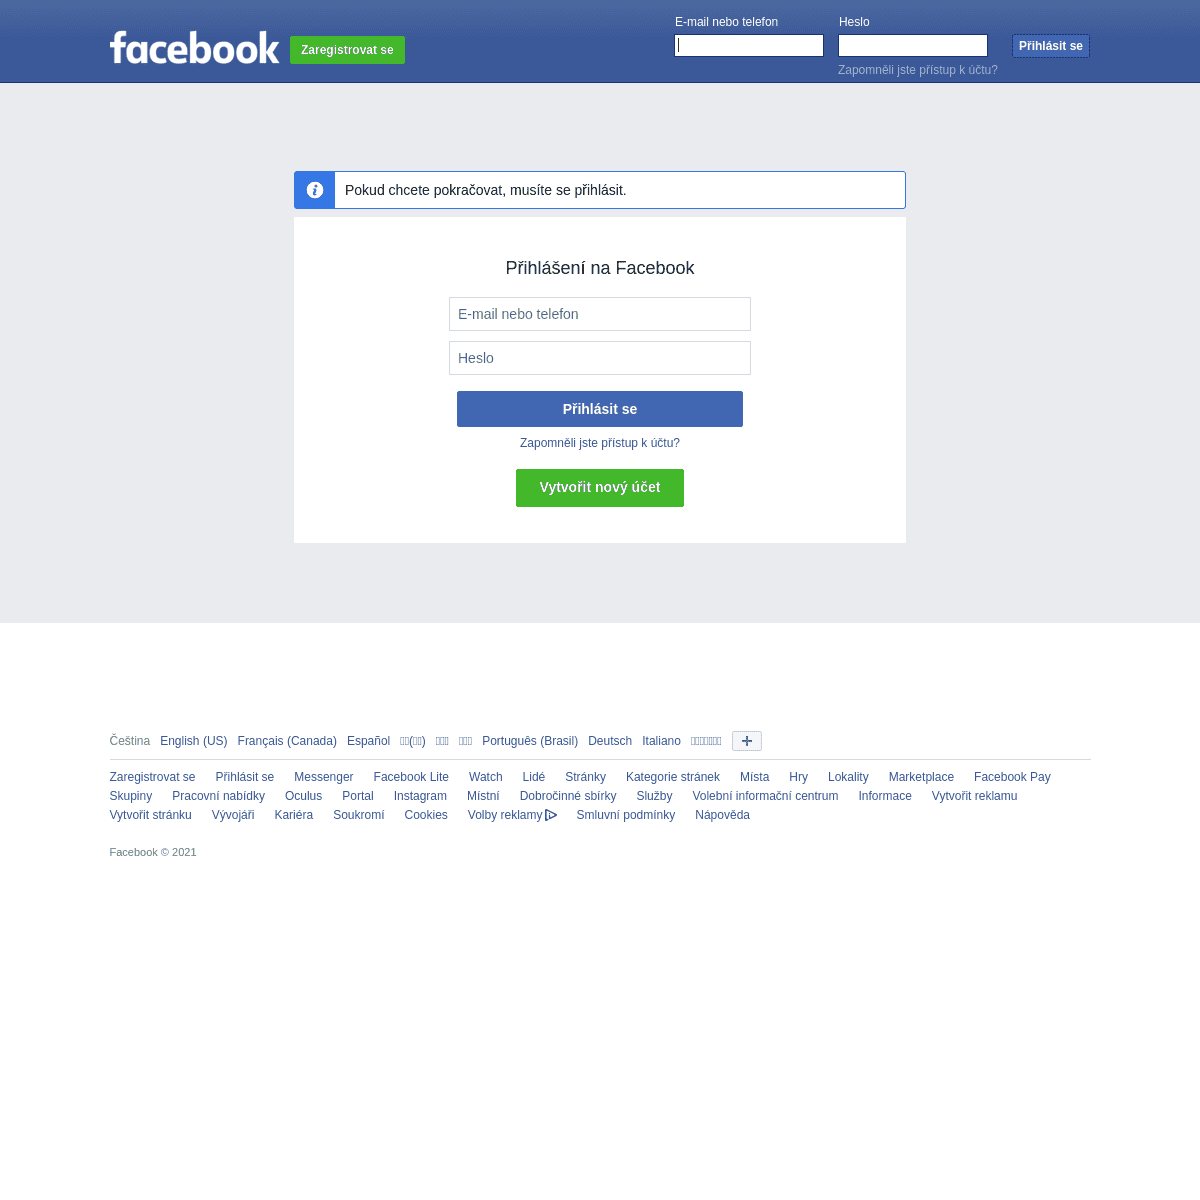 A complete backup of https://cs-cz.facebook.com/JennyScordamaglia/posts/2503920646304064